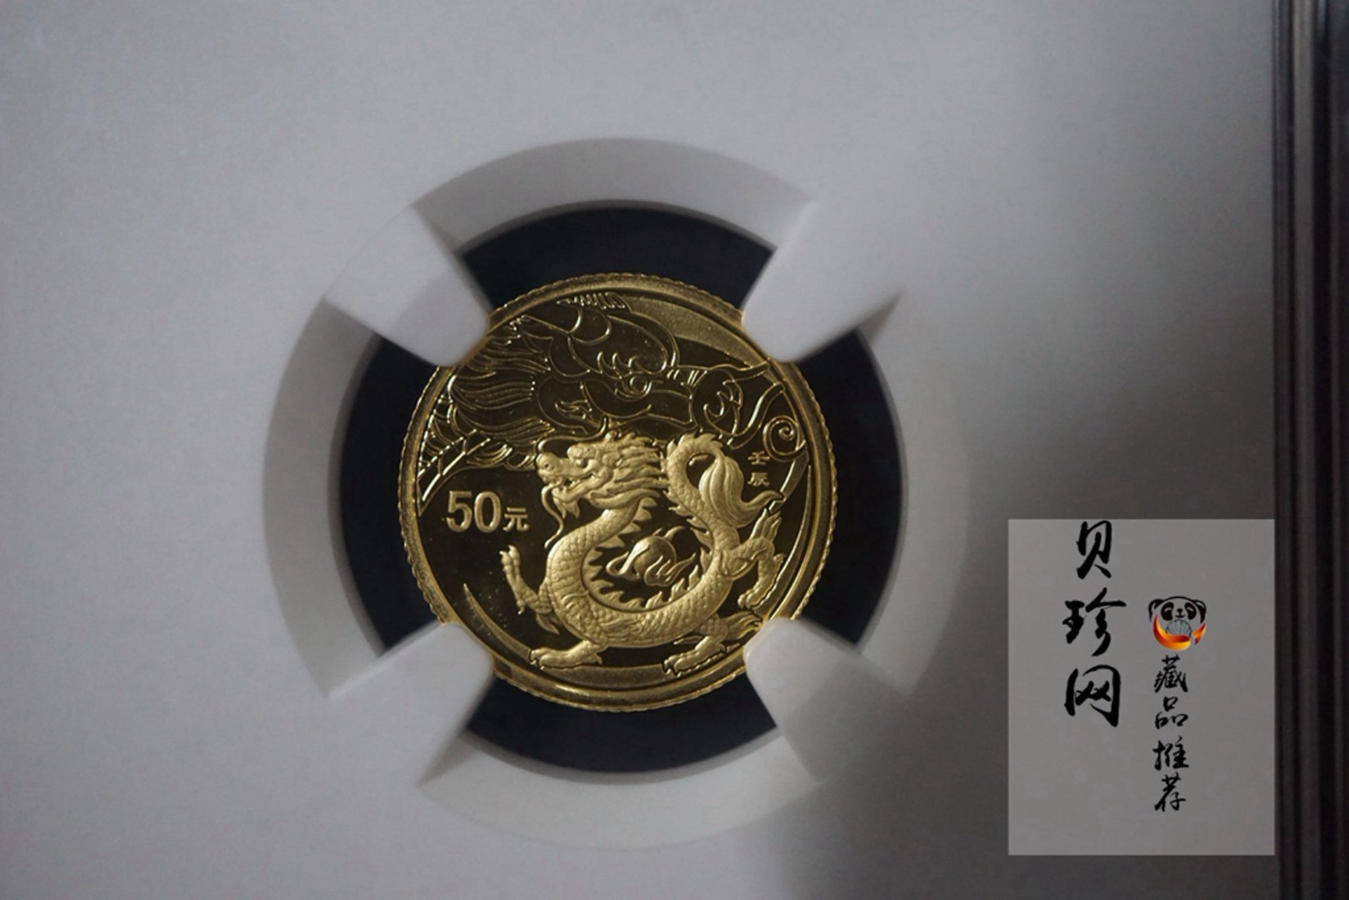 【111503】2012年壬辰龙年生肖1/10盎司精制彩金币